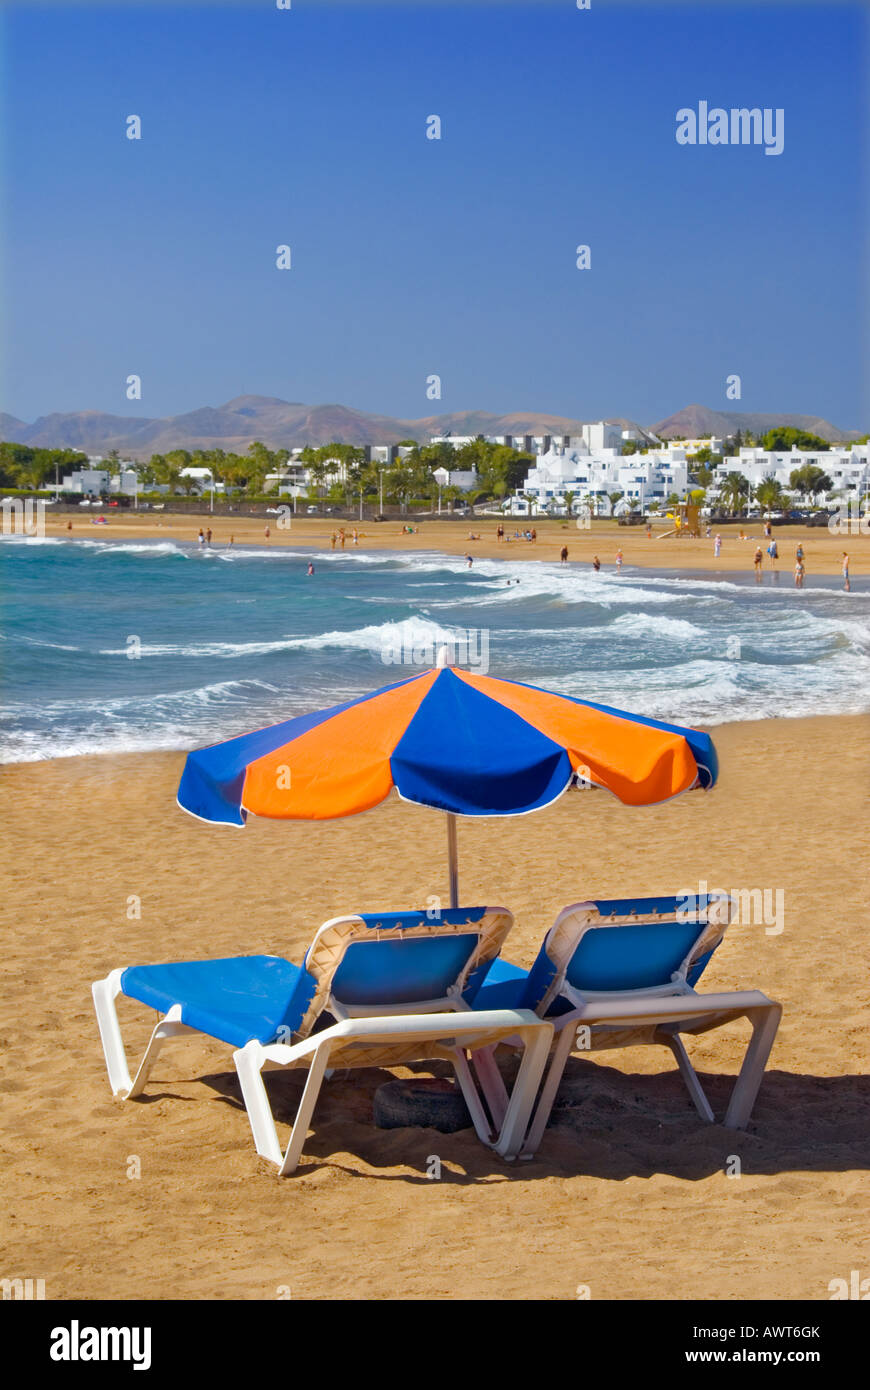 Playa del Carmen plage Parasol transat sunny côte plage de sable doré avec  pare-soleil parasol et chaises longues, Lanzarote, îles Canaries, Espagne  Photo Stock - Alamy